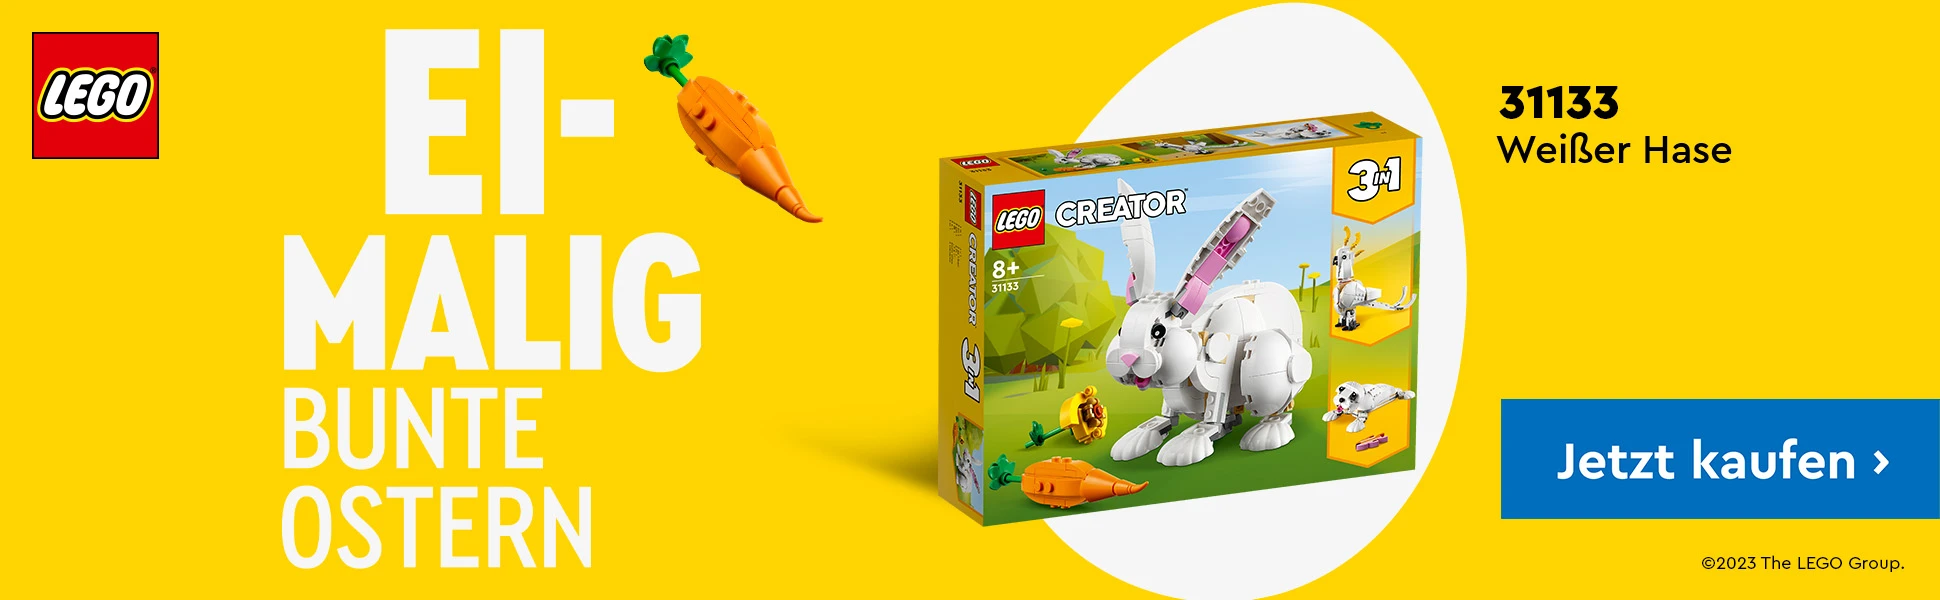 LEGO zu Ostern bei Spielzeugwelten.de